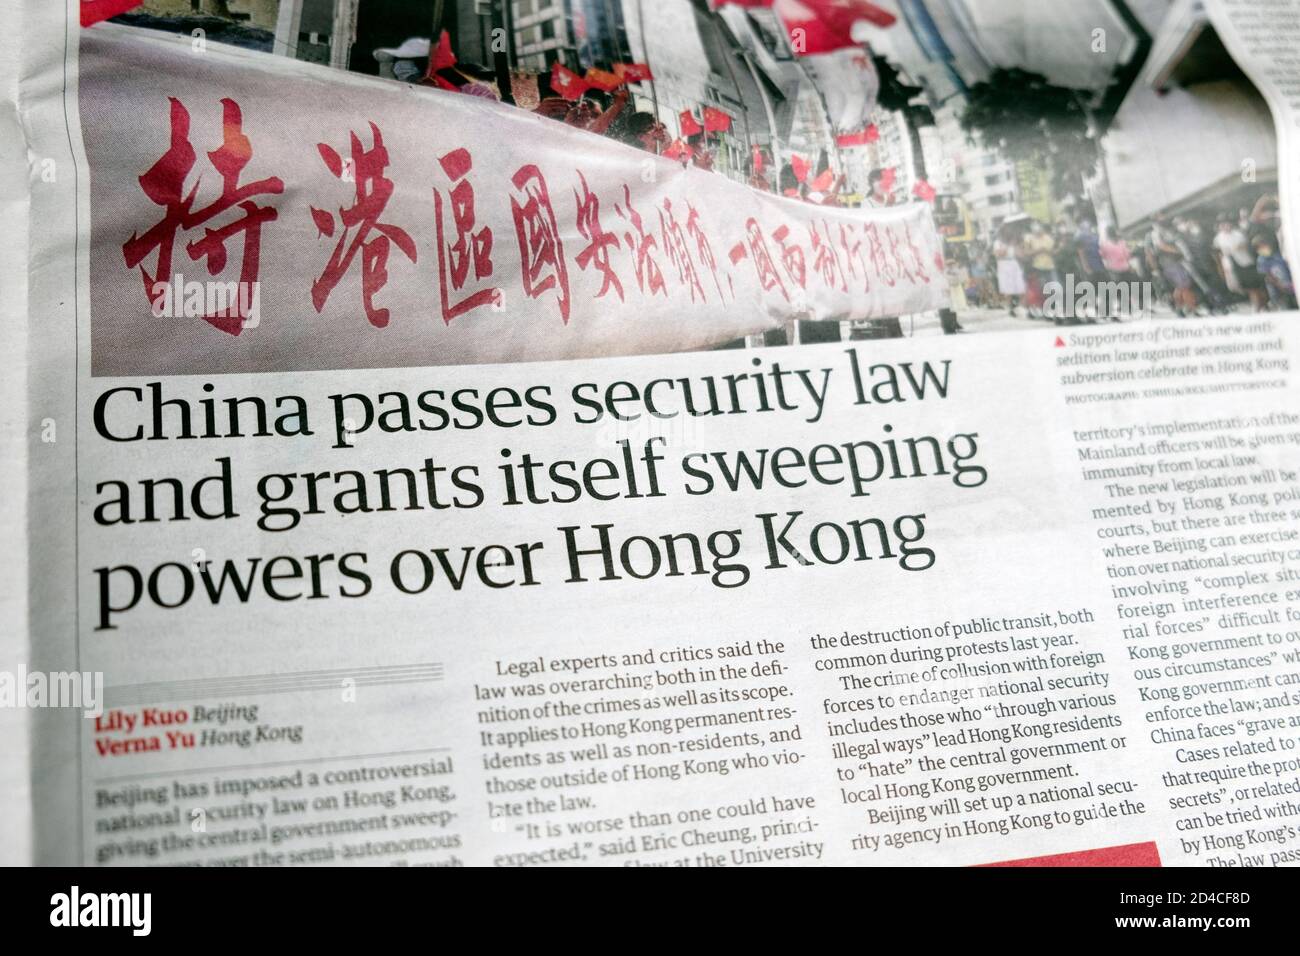 « la Chine passe la loi sur la sécurité et s'accorde elle-même des pouvoirs considérables Titre du journal de Hog Kong à l'intérieur de la page papier Guardian juin 2020 Londres Angleterre Royaume-Uni Banque D'Images